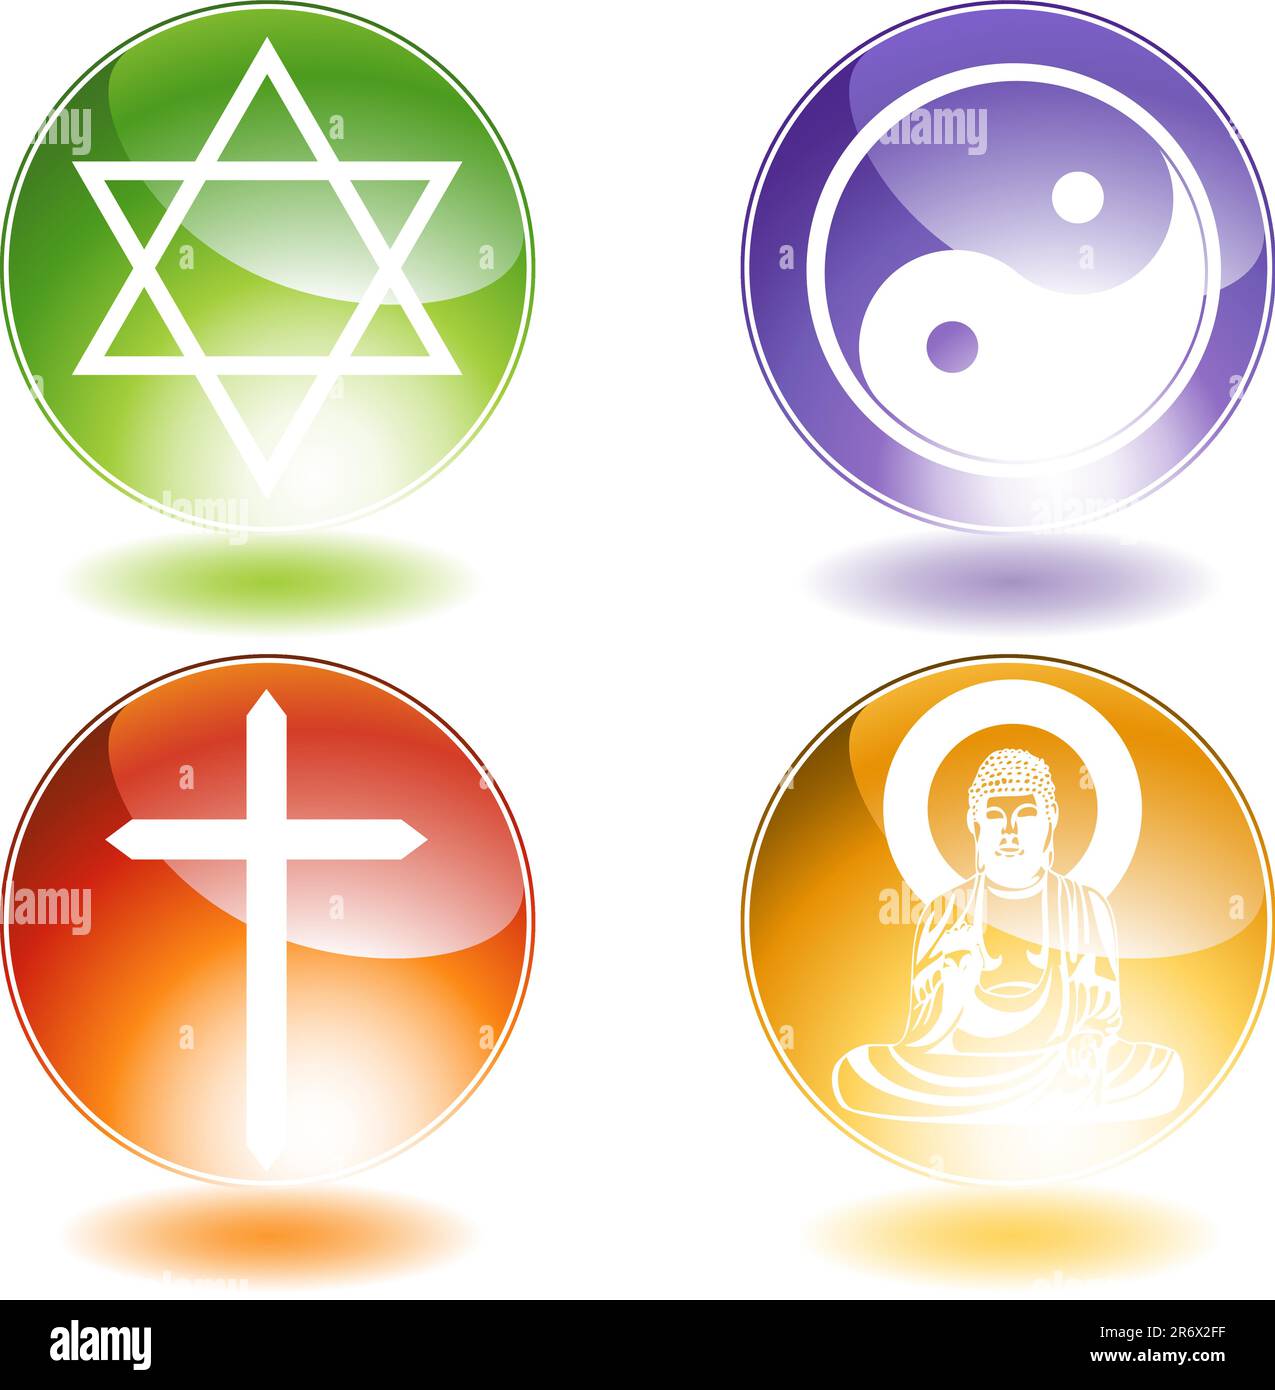 Set of 4 religious symbols. Stock Vector